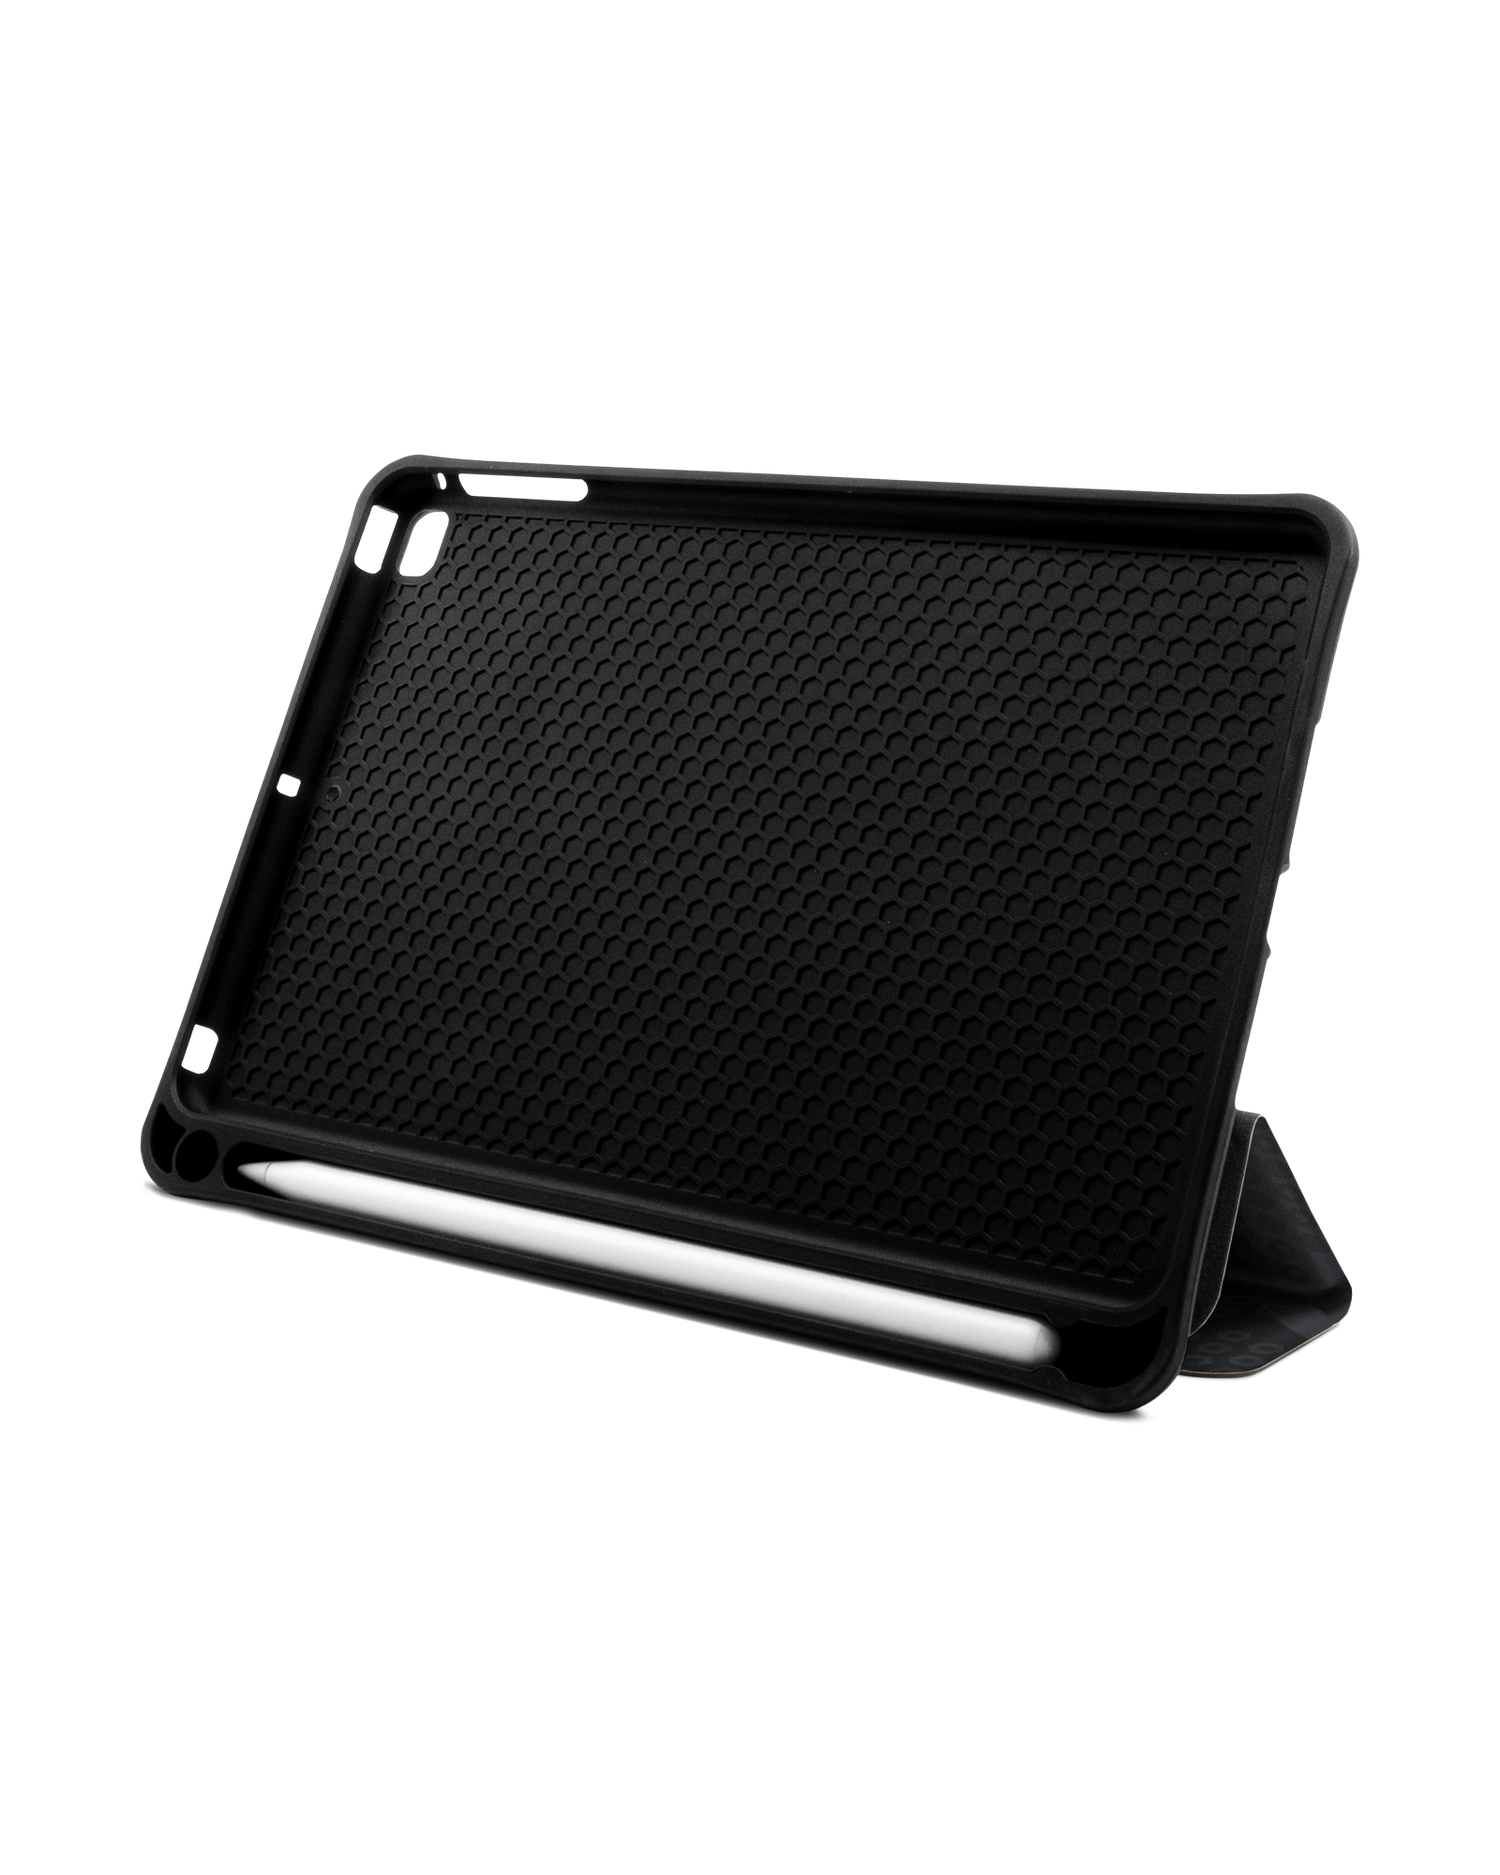 Spec Ops Dark iPad Hülle mit Stifthalter Apple iPad mini 5 (2019): Aufgestellt im Querformat von vorne